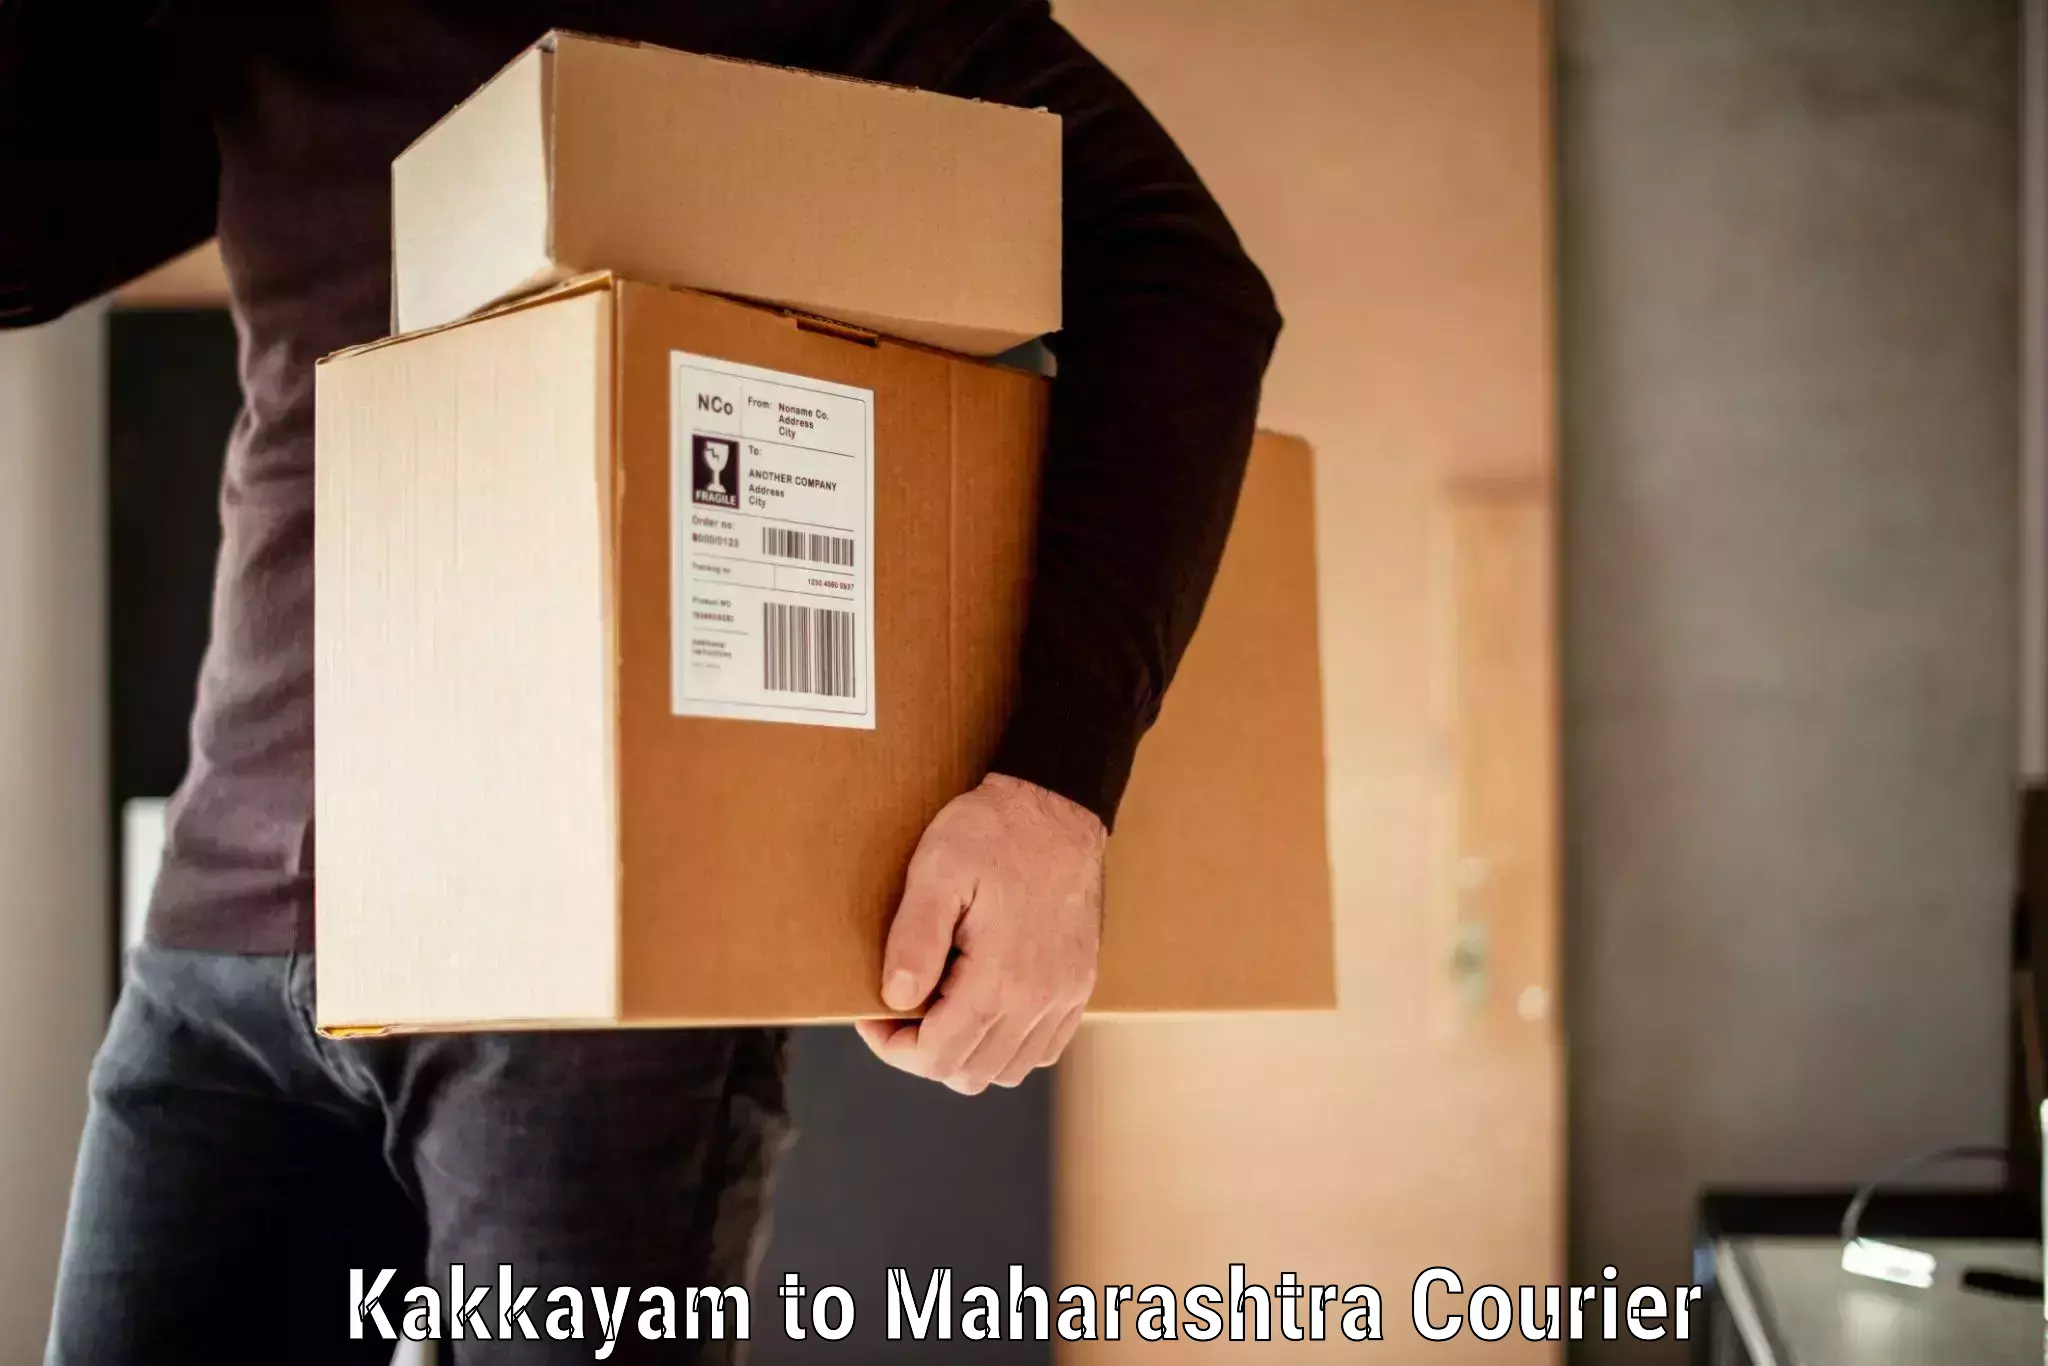 Luggage delivery system Kakkayam to Mumbai University